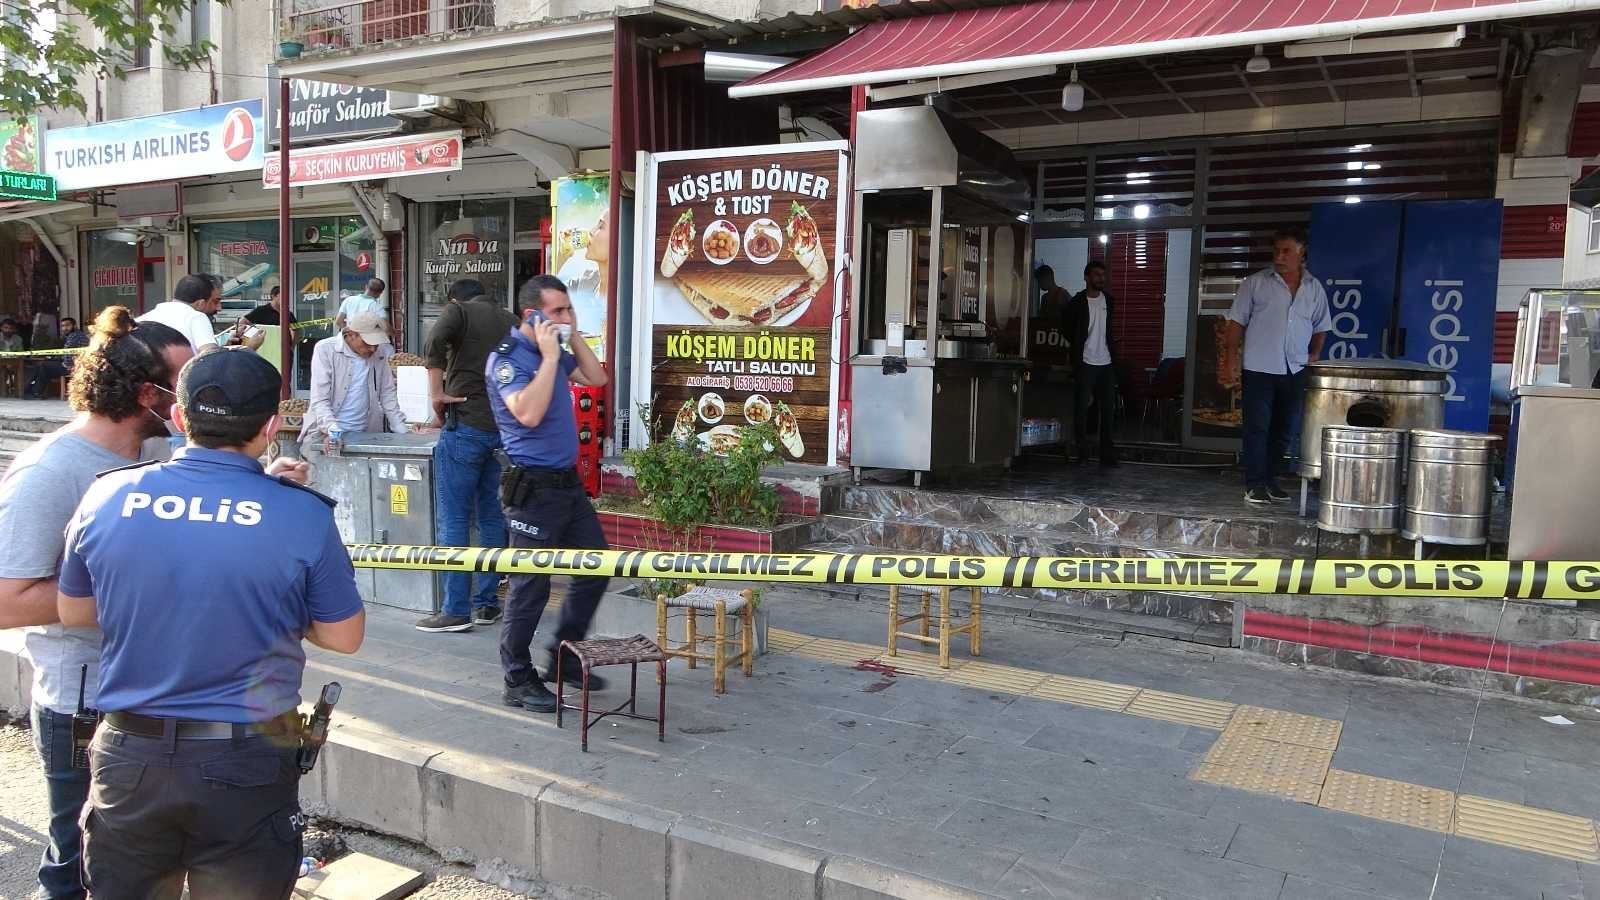 Asansörde tartıştığı komşunu sokakta silahla ağır yaraladı #diyarbakir